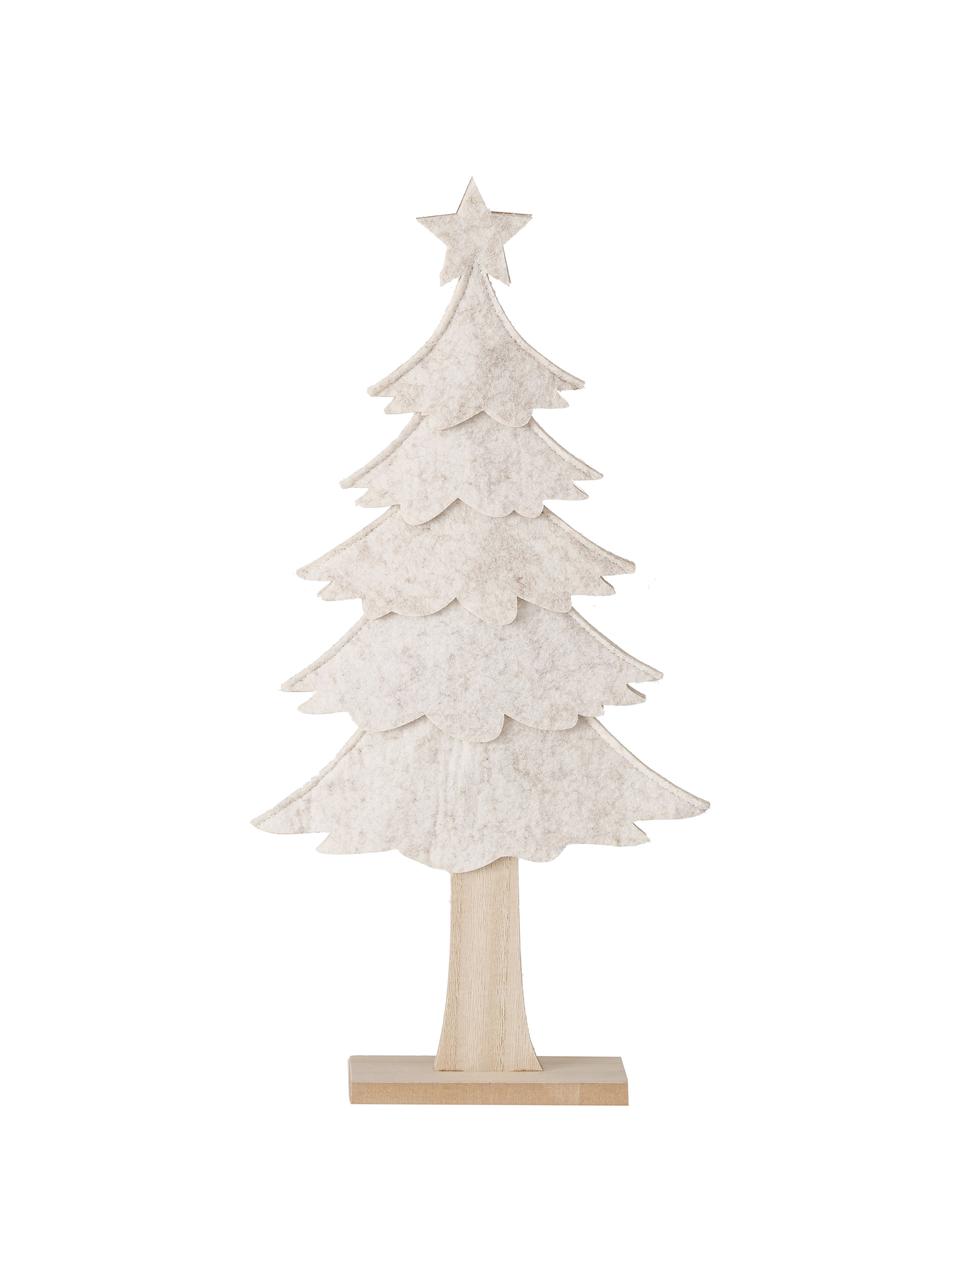 Decoratieve kerstboom Janne, MDF, polyester-vilt, Beige, lichtbruin, B 23 x H 47 cm